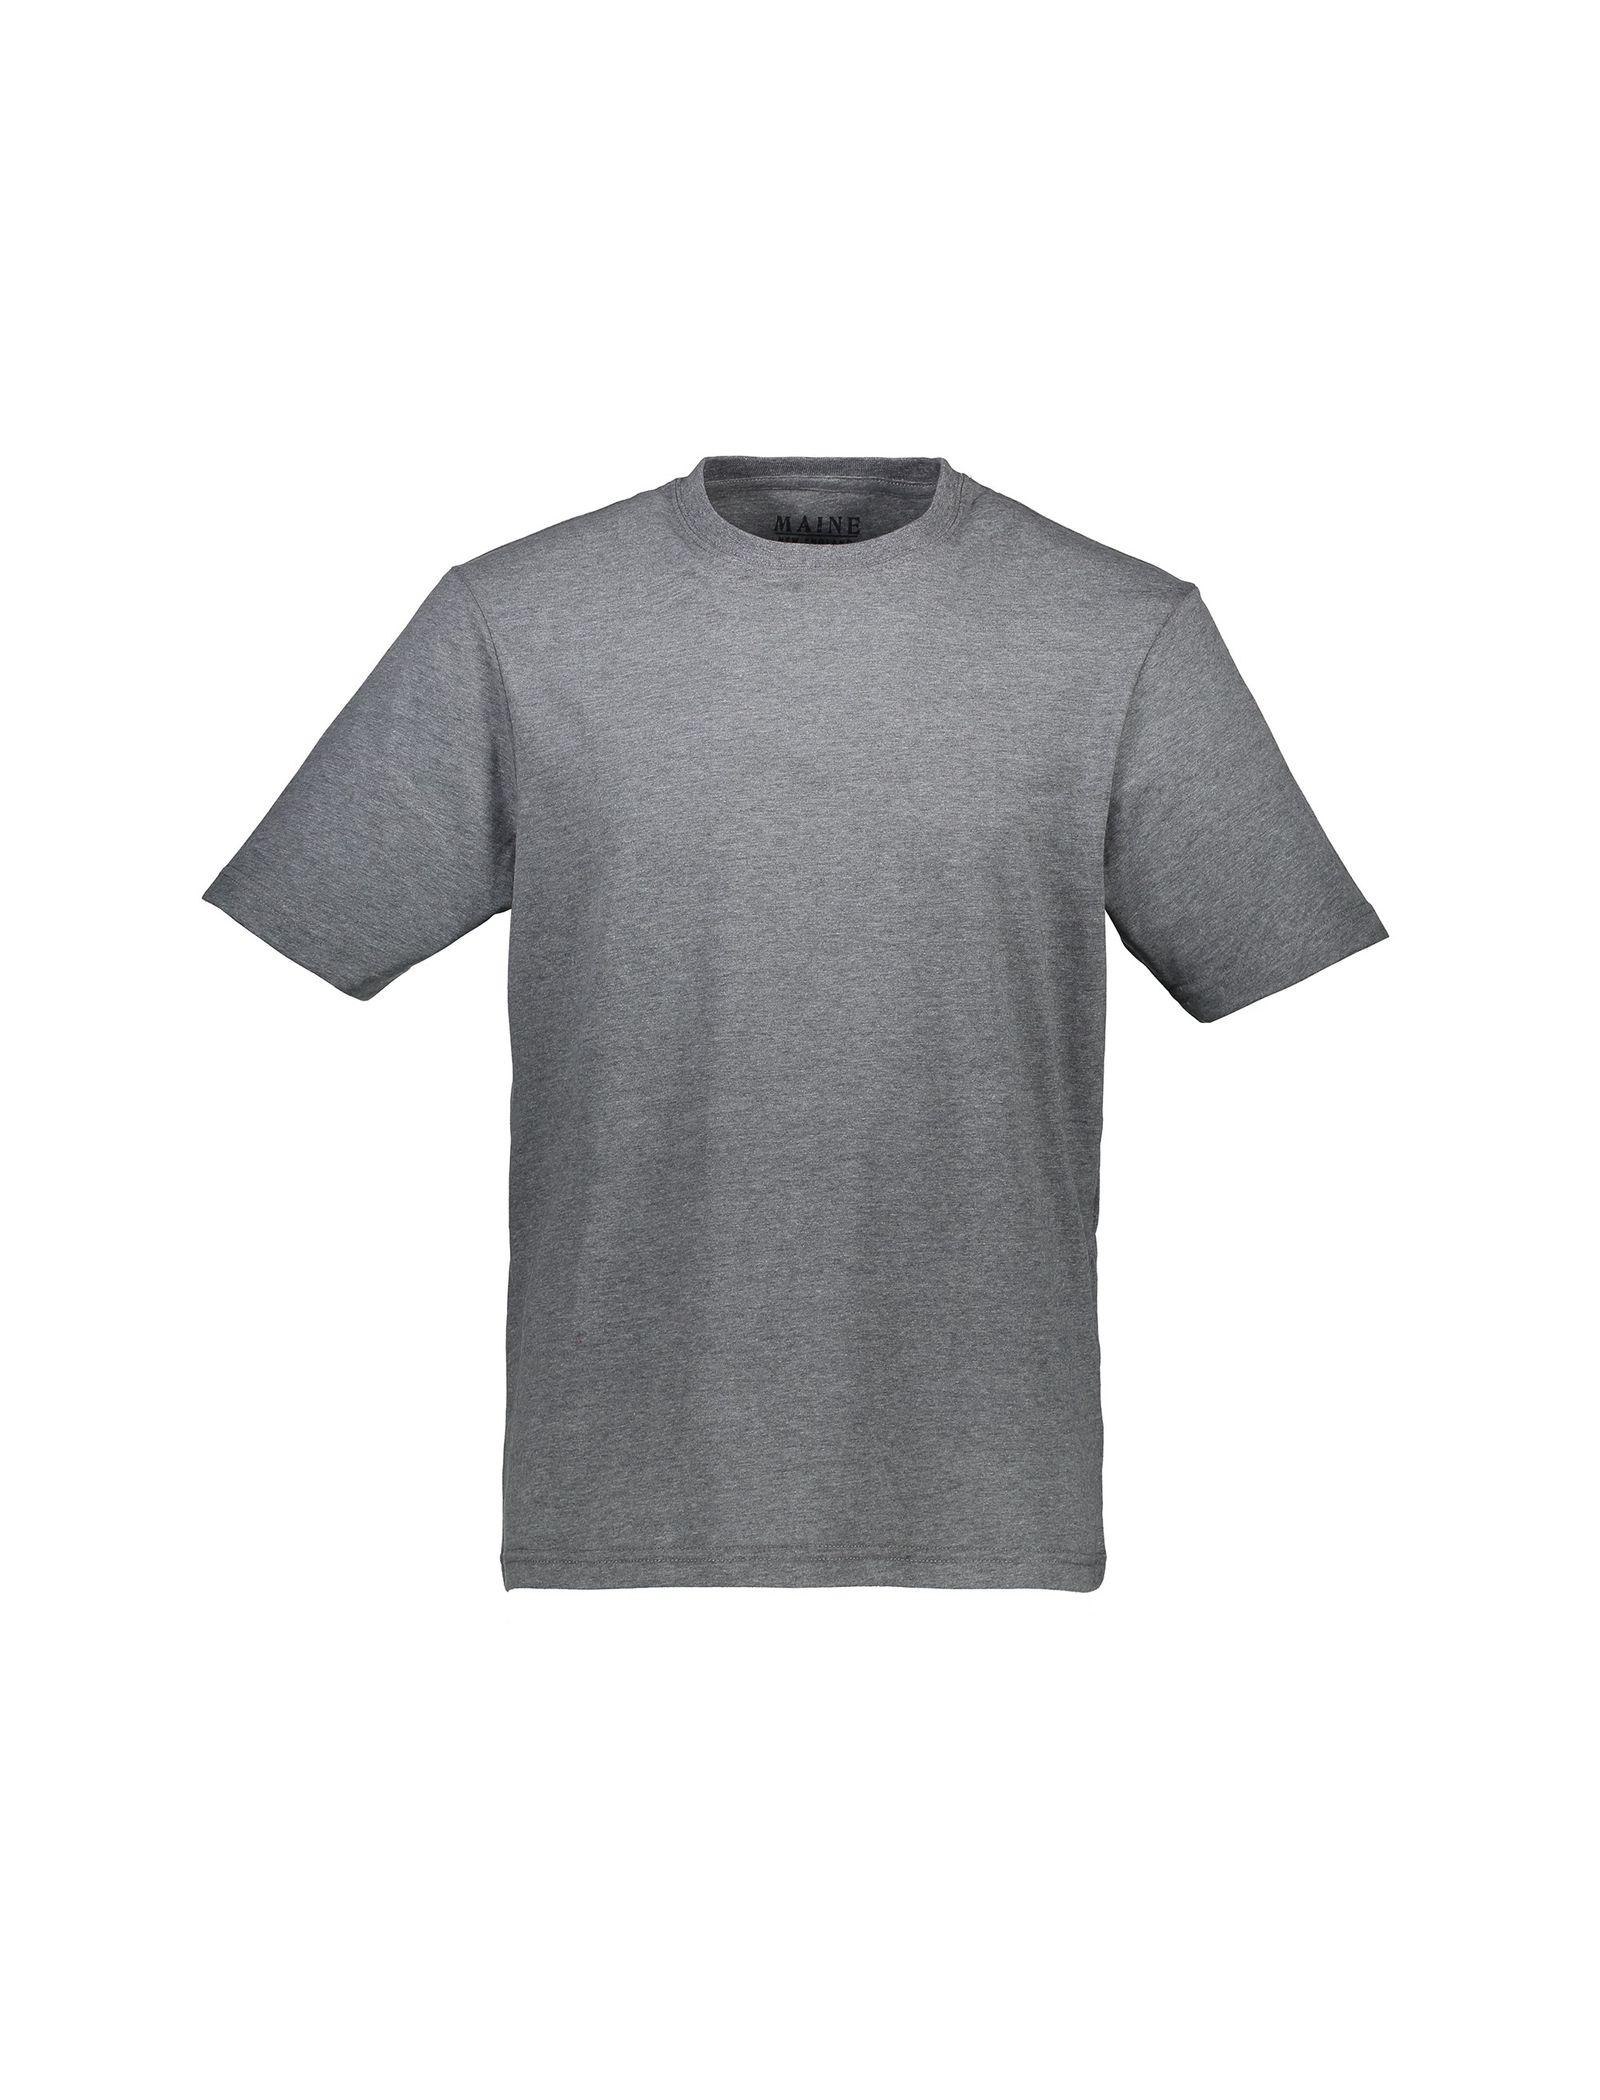 تی شرت و شلوار راحتی نخی مردانه - مین نیو اینگلند - طوسي - 3